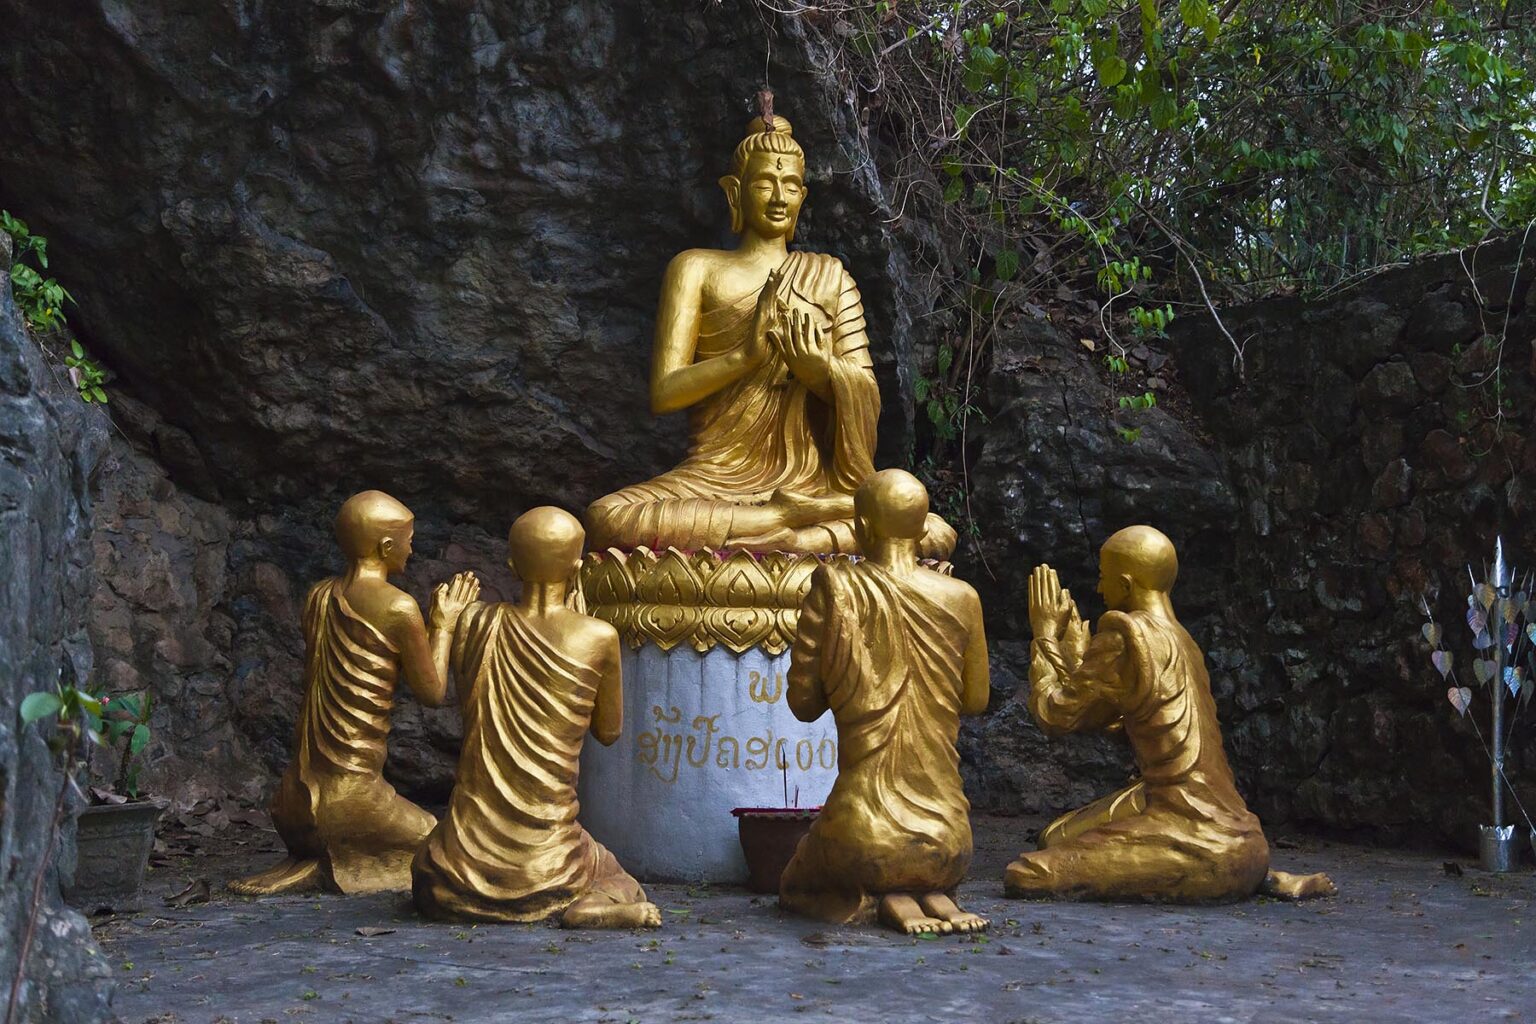 GOLDEN BUDDHA with DISCIPLES on MOUNT PHOUSI  - LUANG PRABANG, LAOS